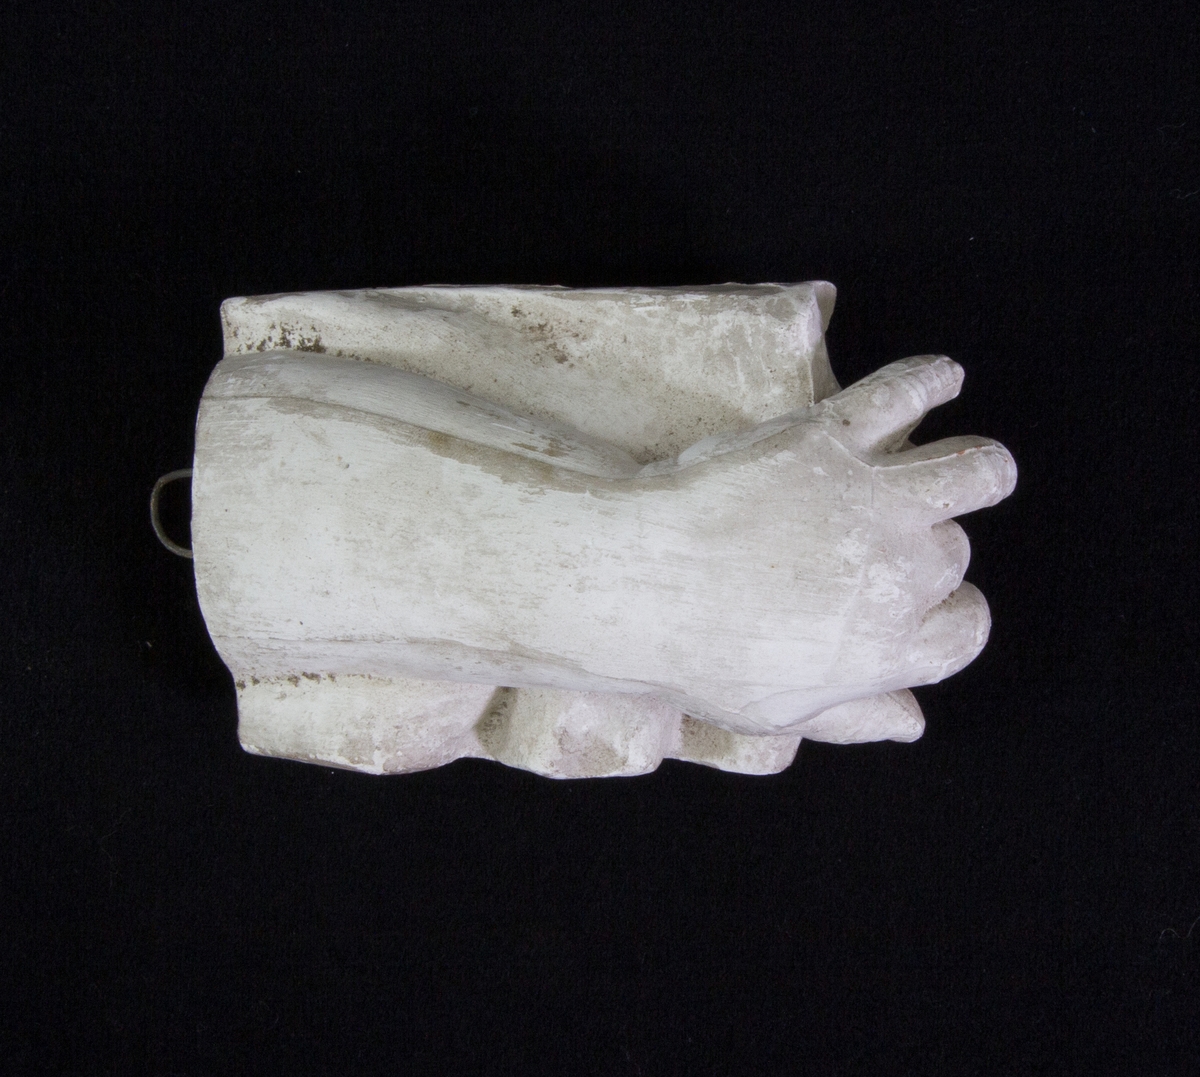 Studie av gips föreställande en hand och delar av armen som vilar på ett svängt underlag. Ögla för upphängning.